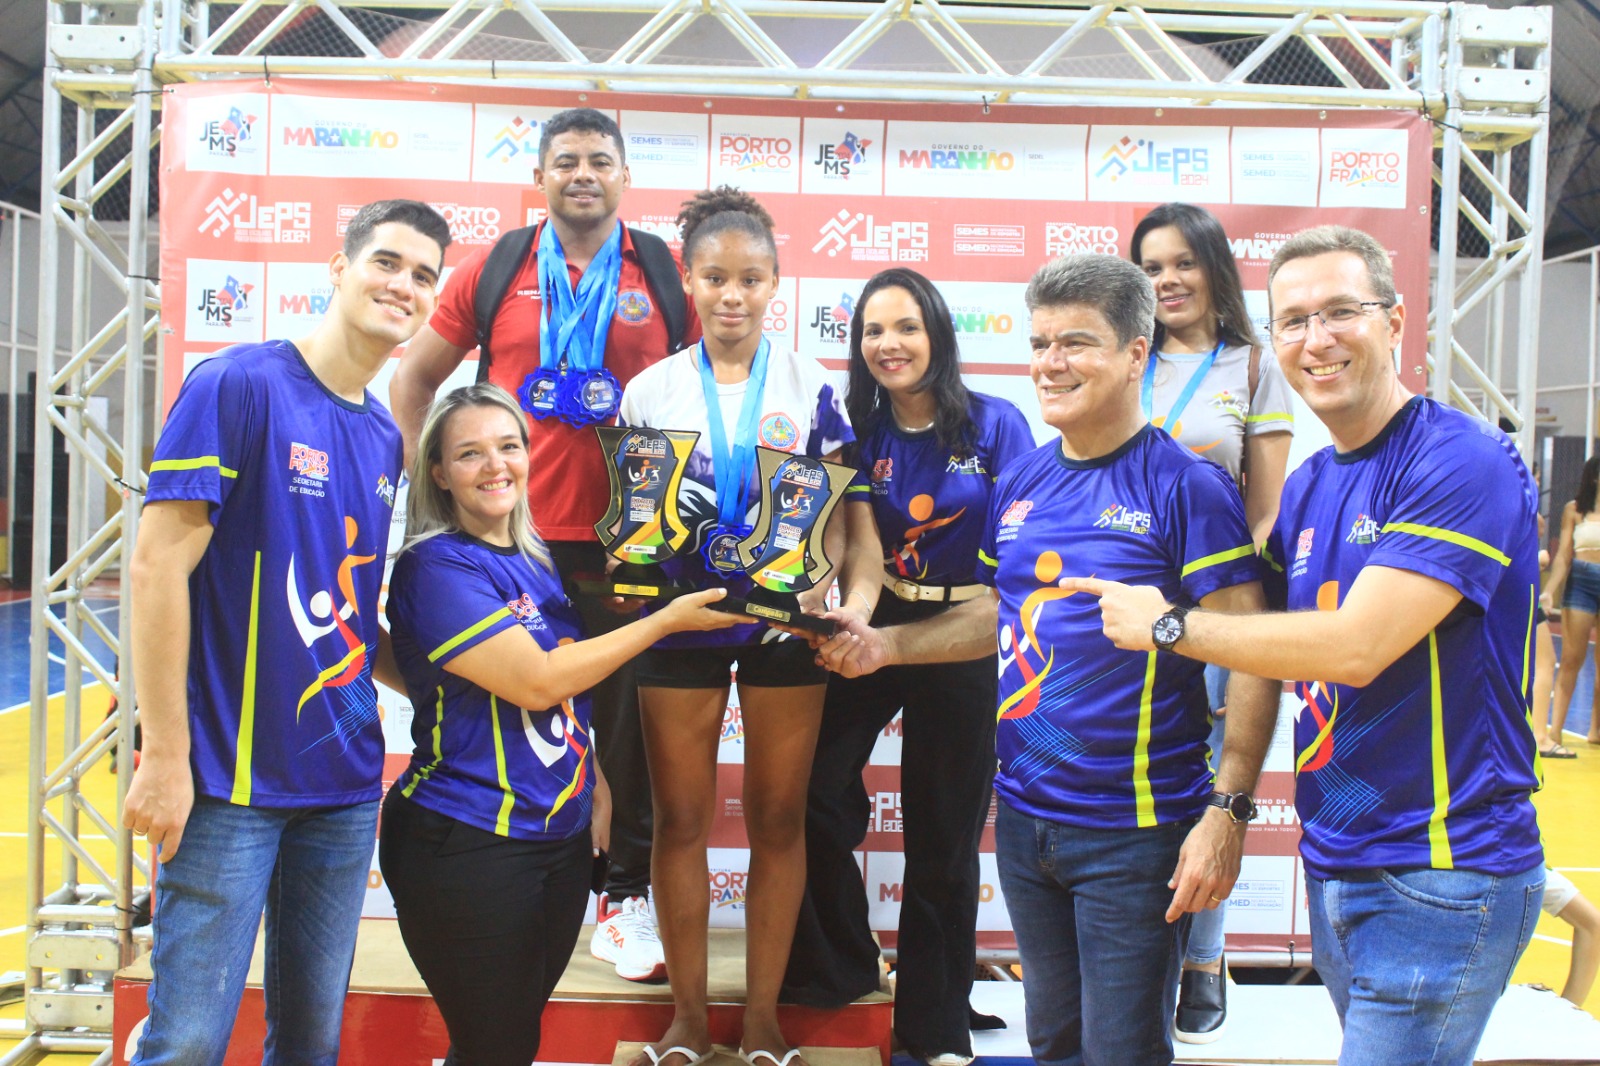 Prefeitura realiza final e premiação dos Jogos Escolares Portofranquinos